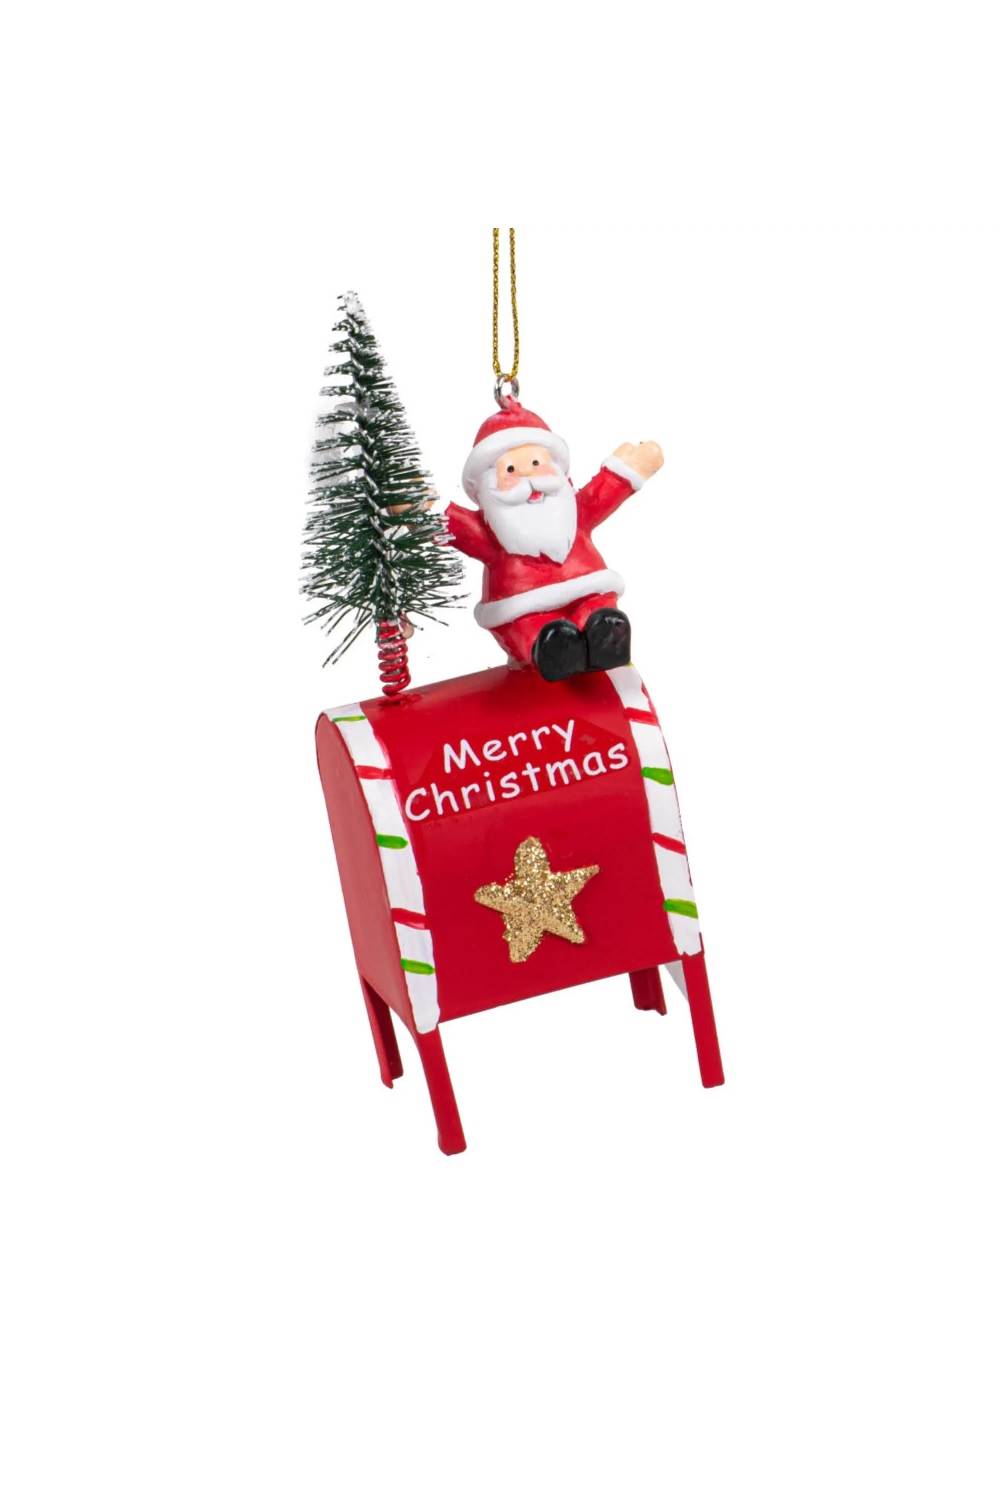 15 adornos de Navidad ideales para decorar tu árbol y llenarlo de magia